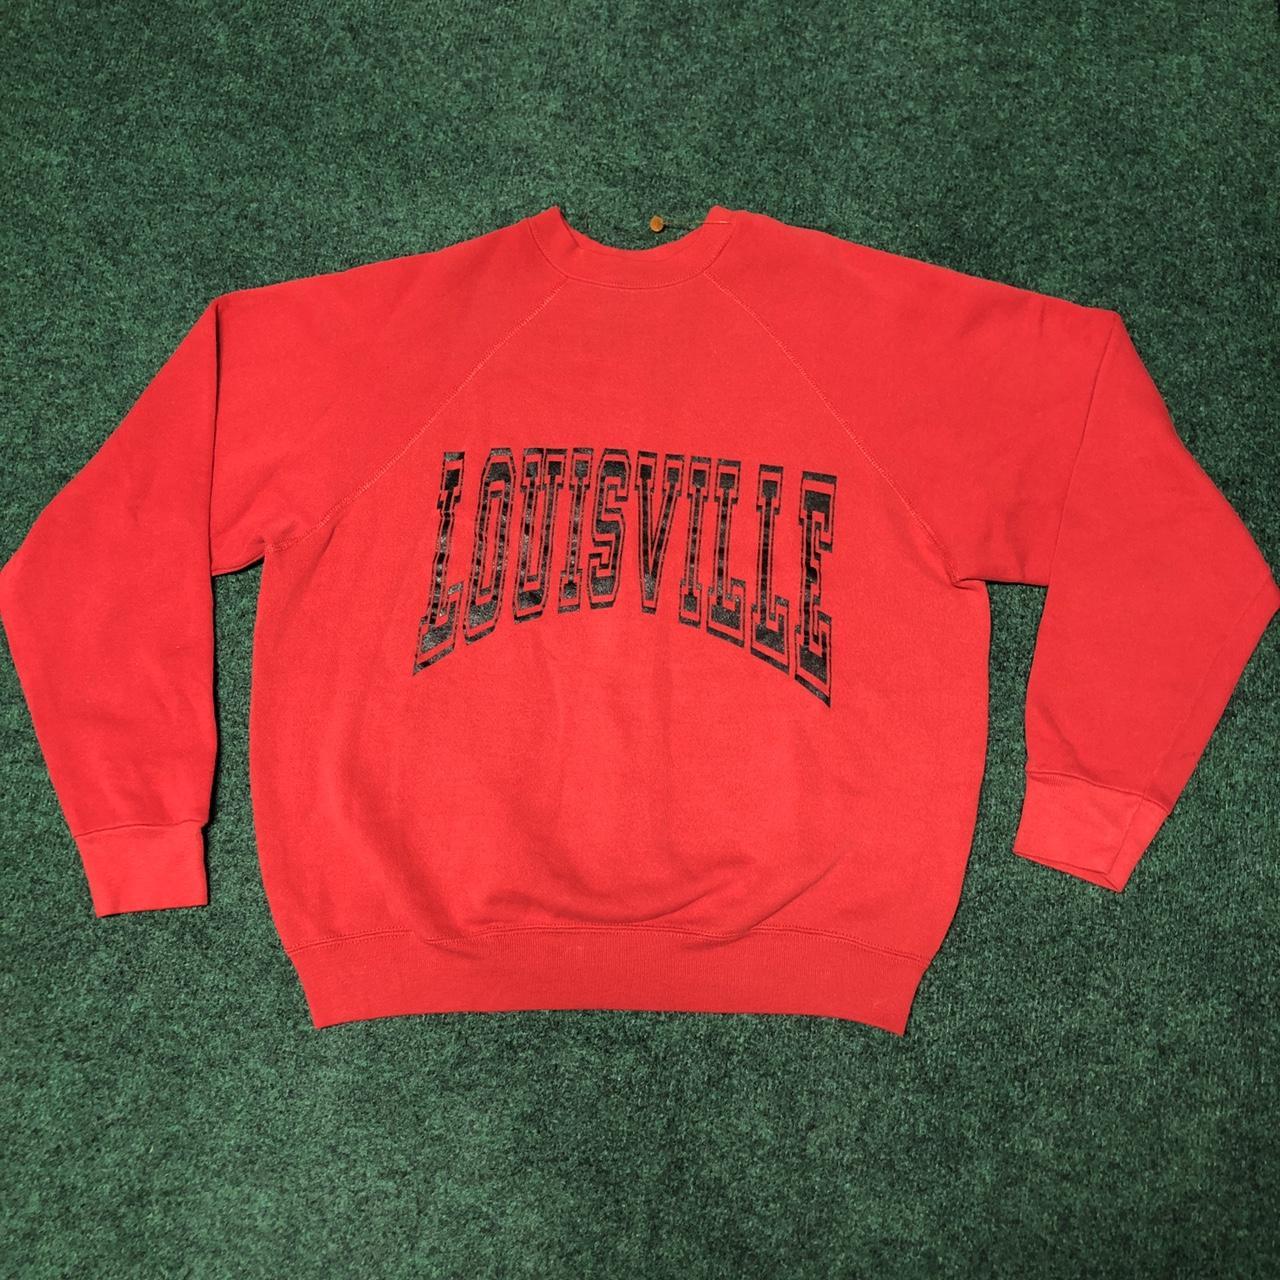 University of Louisville Sweatshirt! Condition: - Depop